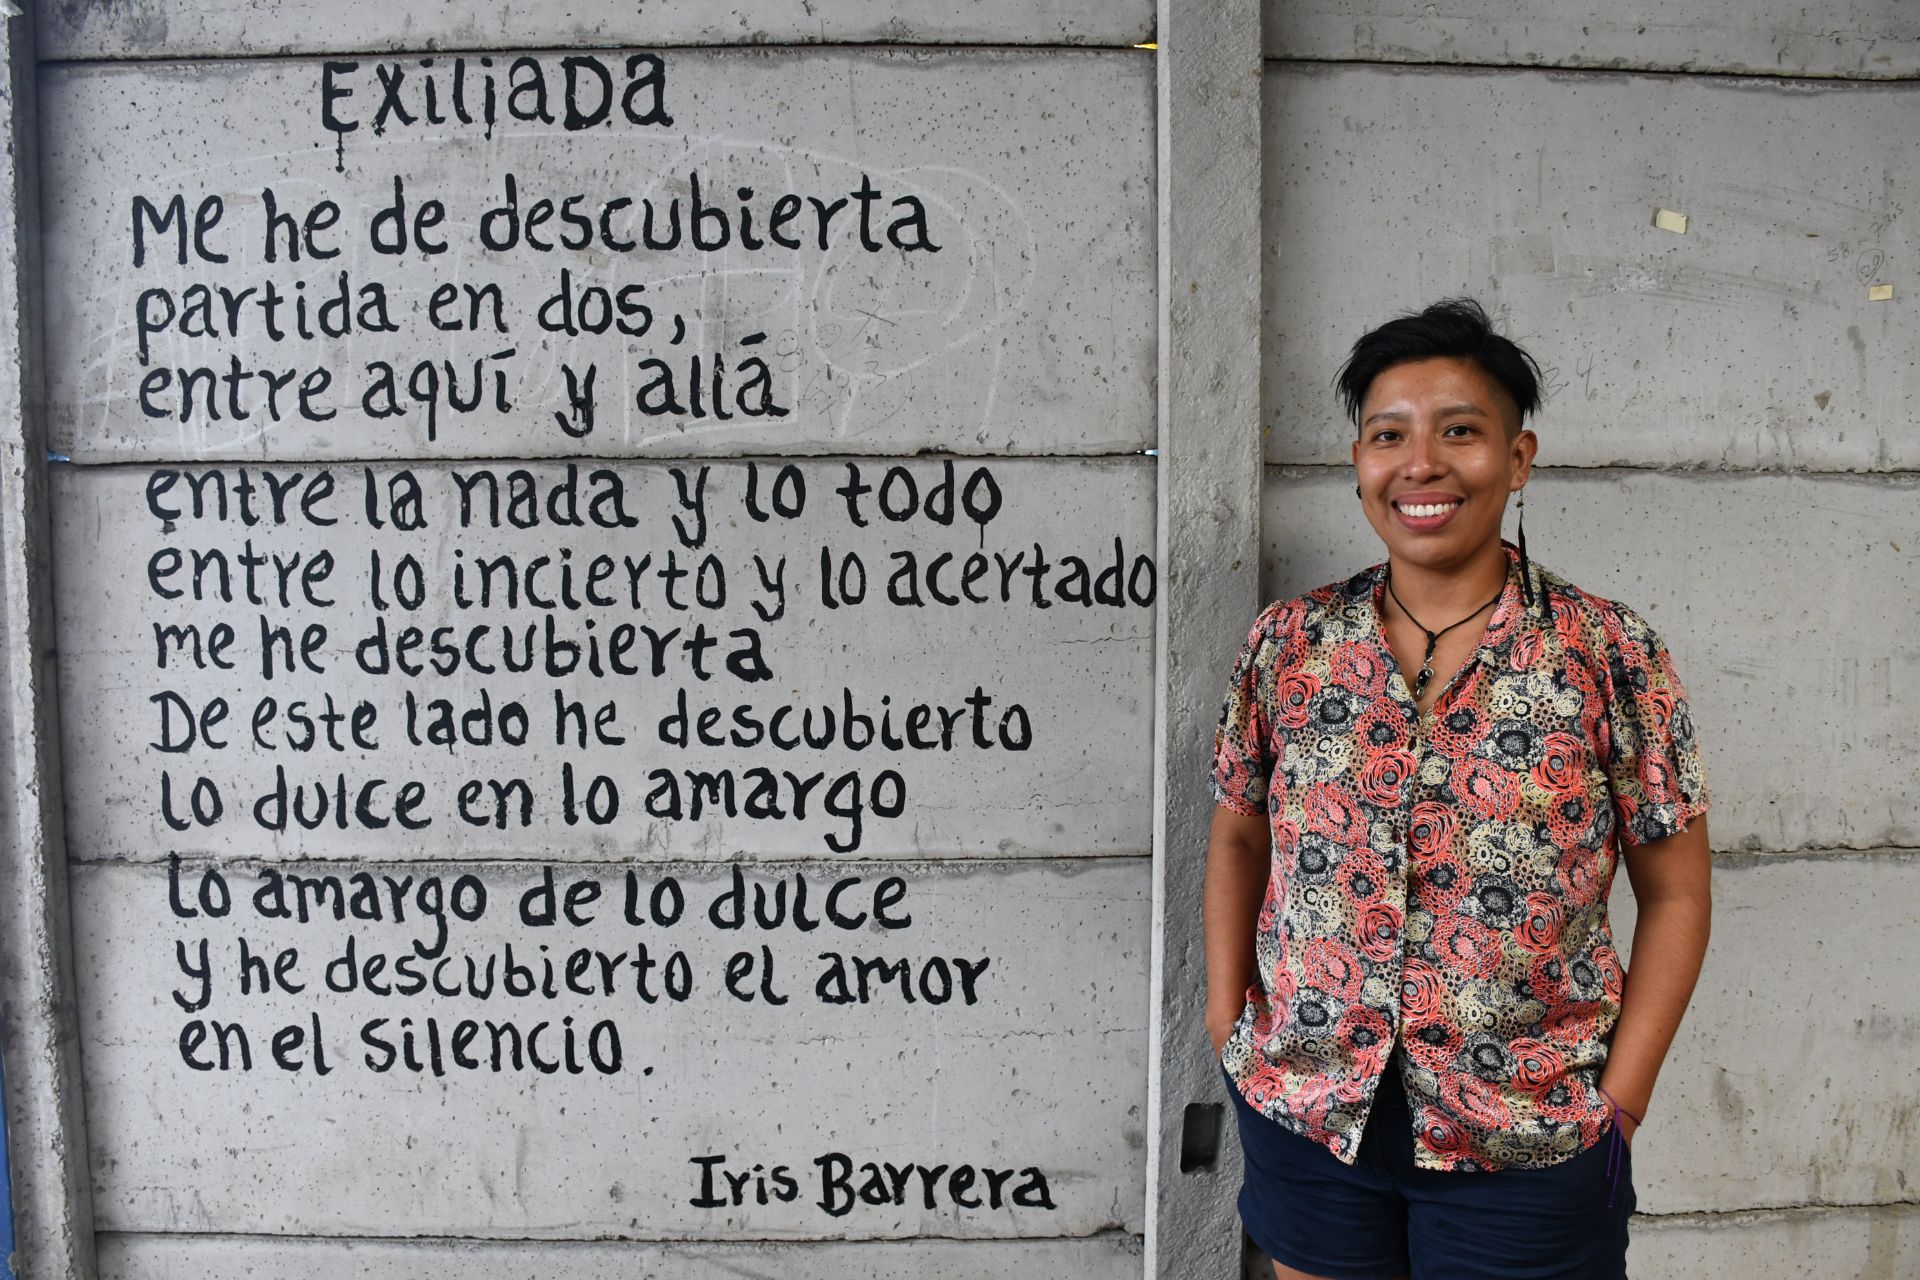 “Las mujeres necesitamos tomar espacios políticos para ser parte de las decisiones”
Iris Karina Barrera Gónzalez
Persecución política / Activista feminista